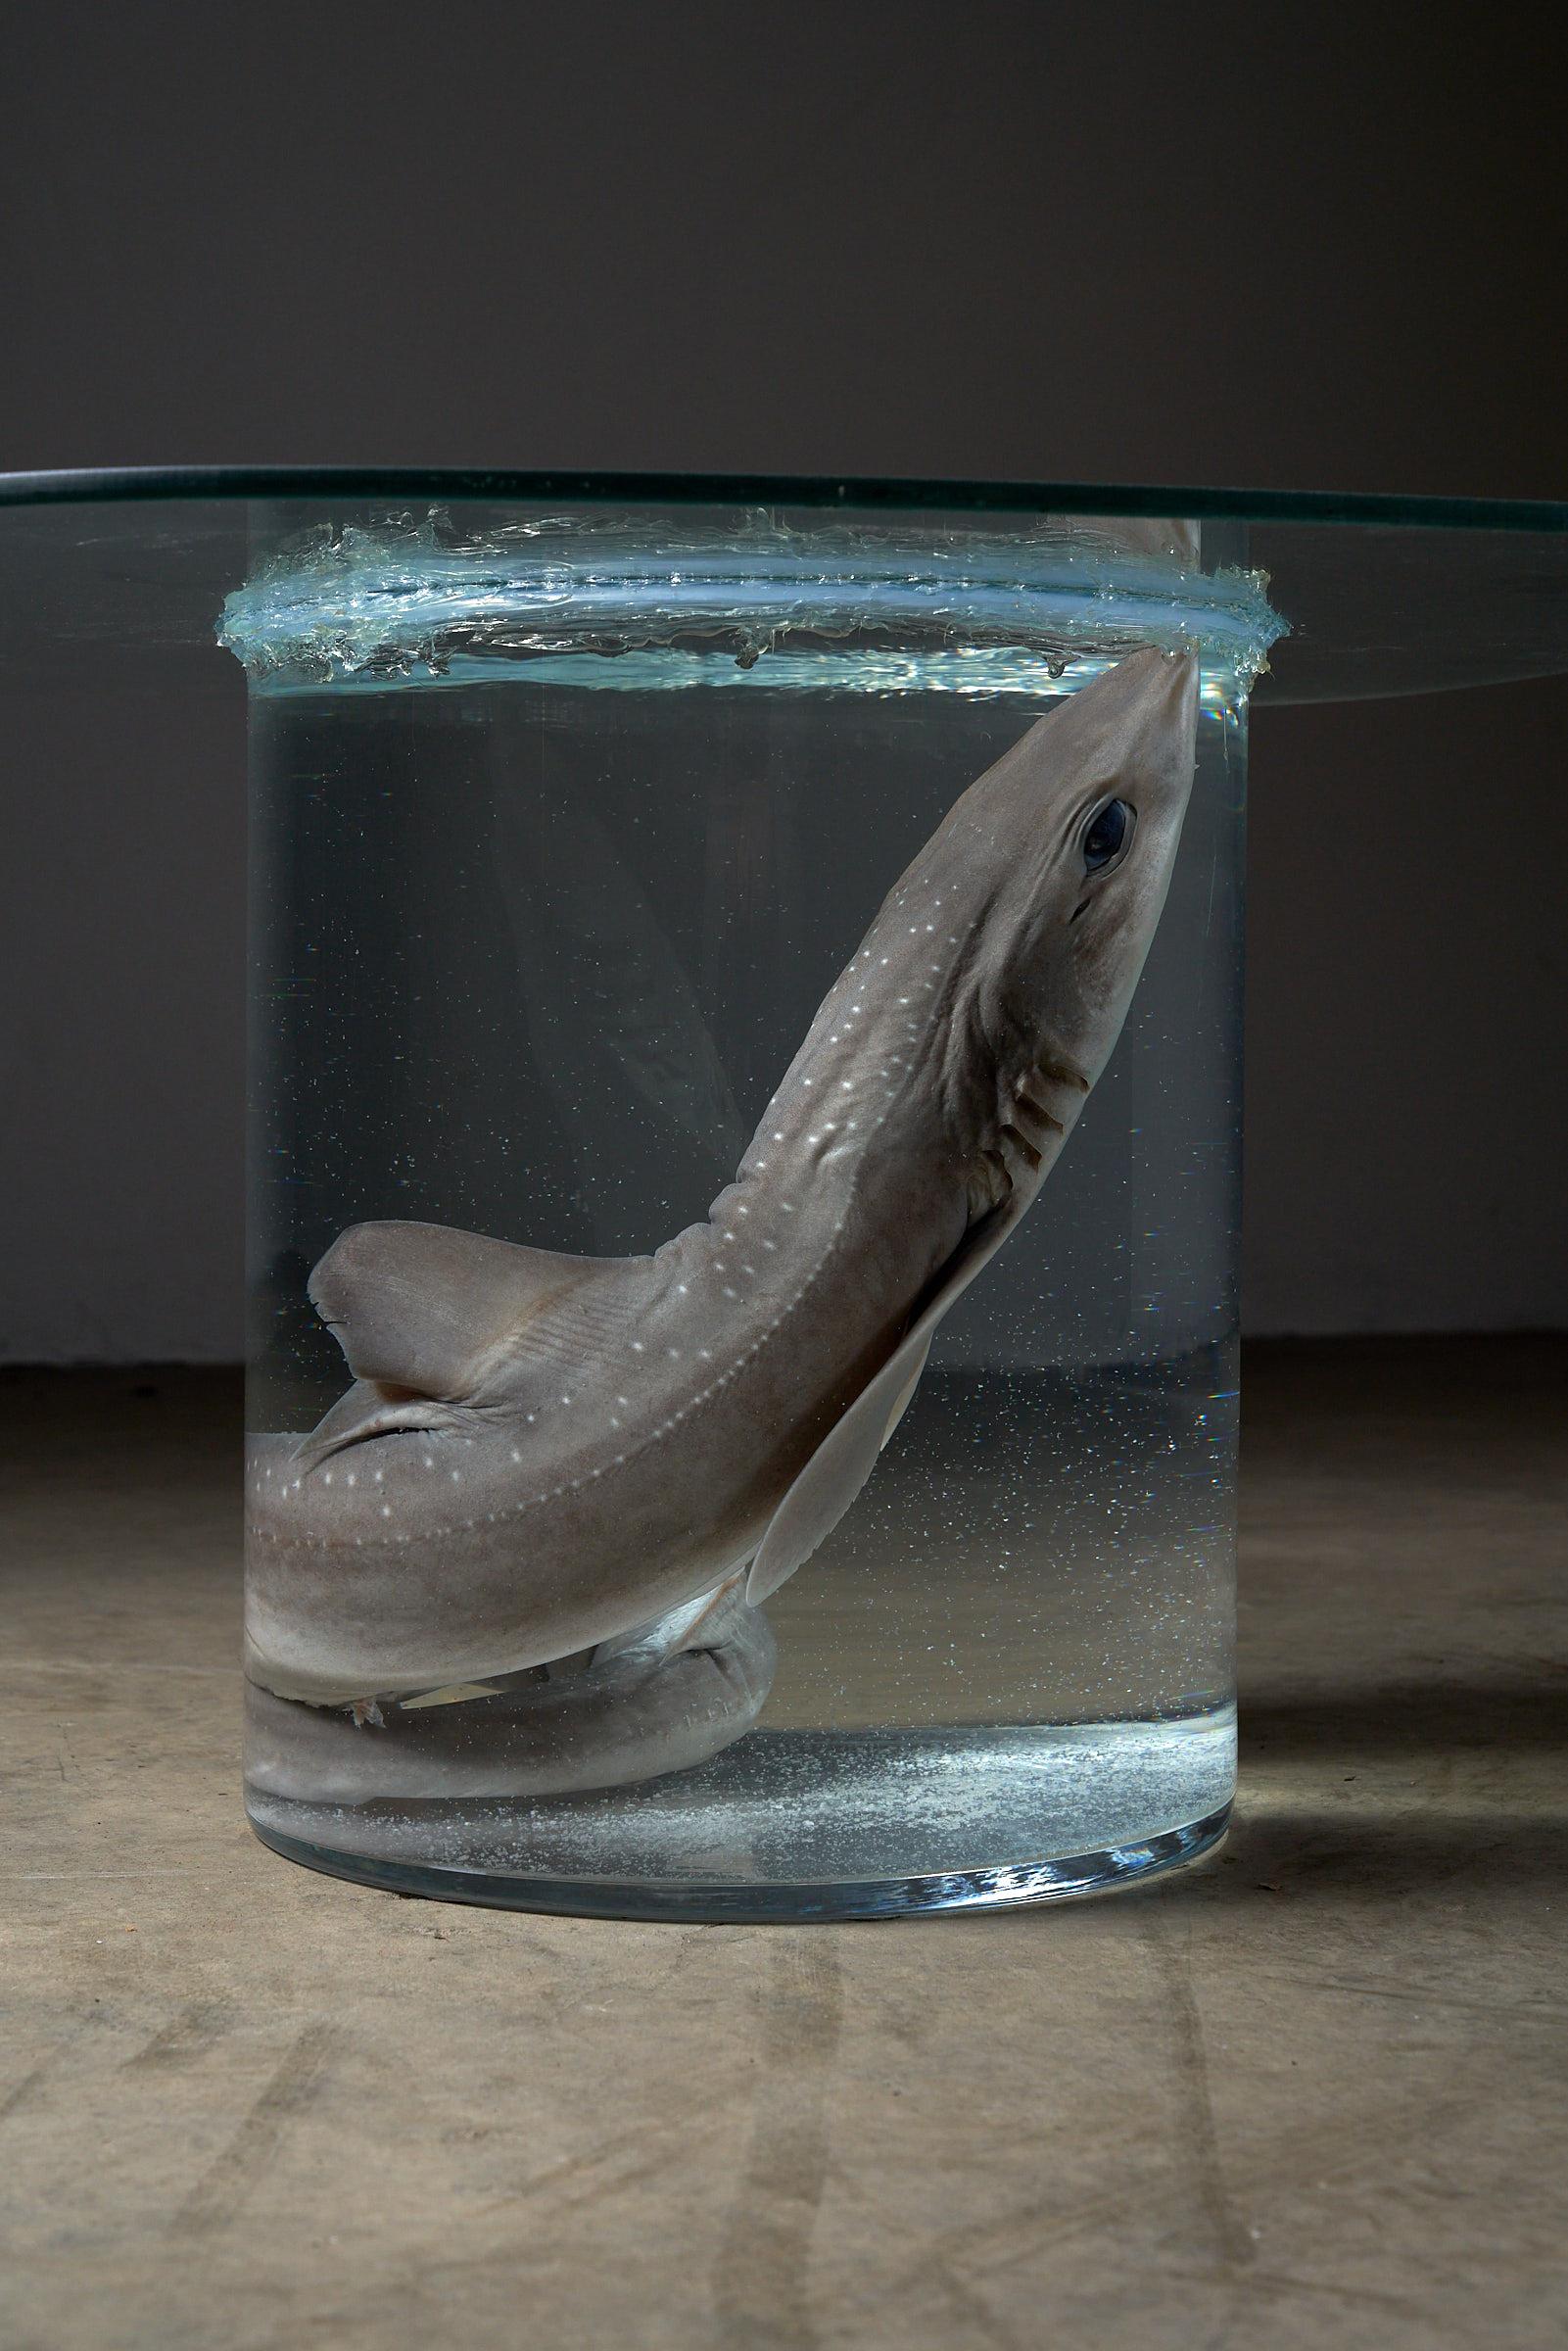 Wir stellen Ihnen unseren außergewöhnlichen Shark-in-Formaldehyde-Sidetable vor - ein wahres Meisterwerk aus Kunst und Funktion. In einem durchsichtigen, runden Glasgehäuse ruht ein konservierter Hai in aller Ruhe in Formaldehyd. Die Glasplatte